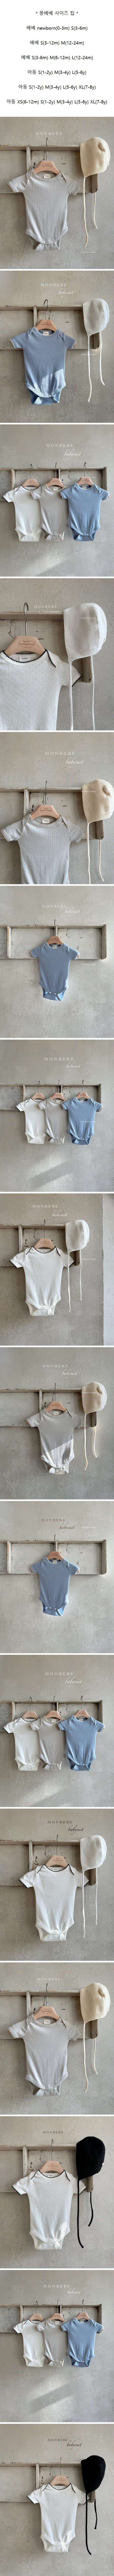 Monbebe - Korean Baby Fashion - #babyclothing - Pincoat Body Suit - 2